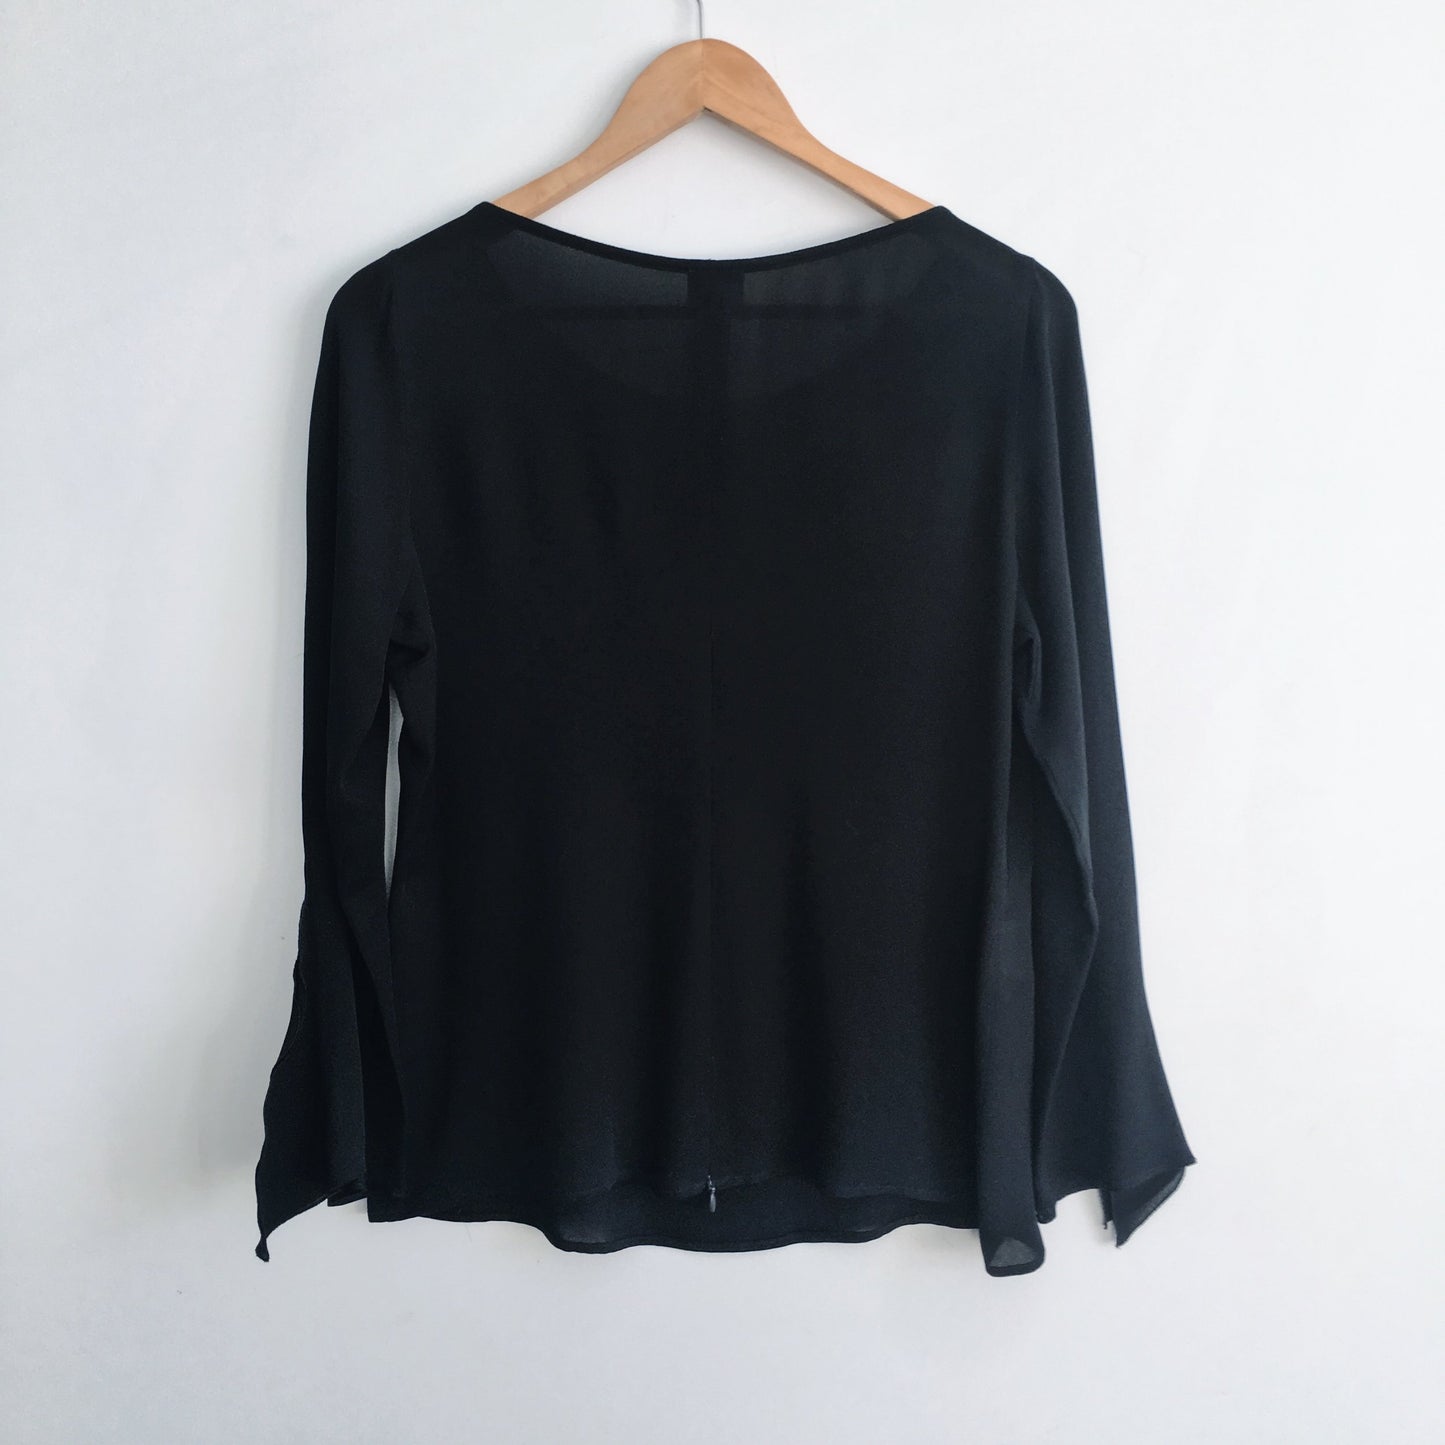 armani collezioni silk blouse with ruffle collar - size 8